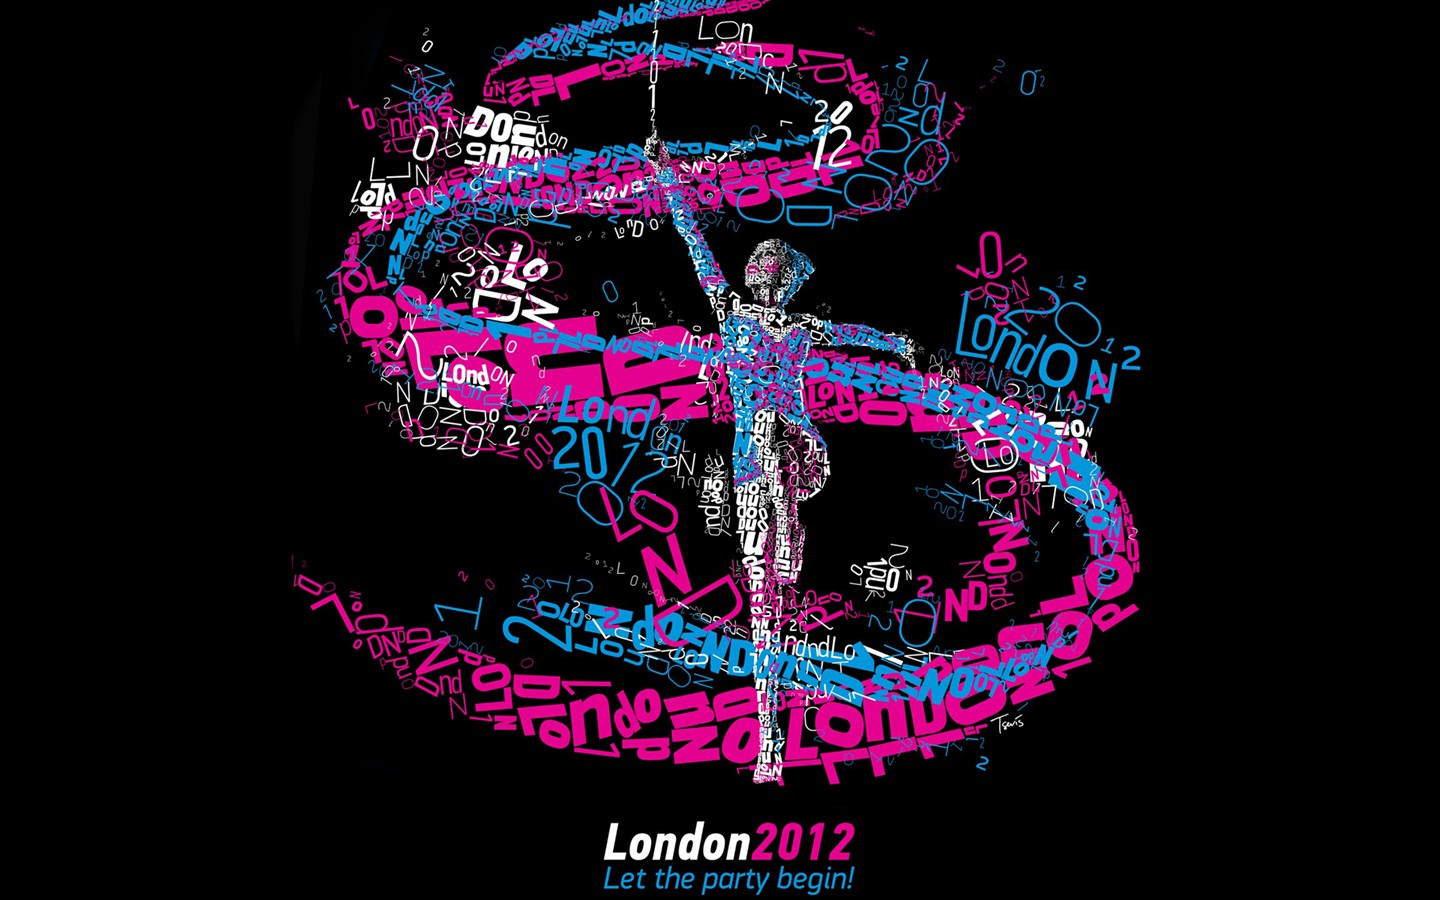 Londres 2012 Olimpiadas fondos temáticos (1) #23 - 1440x900